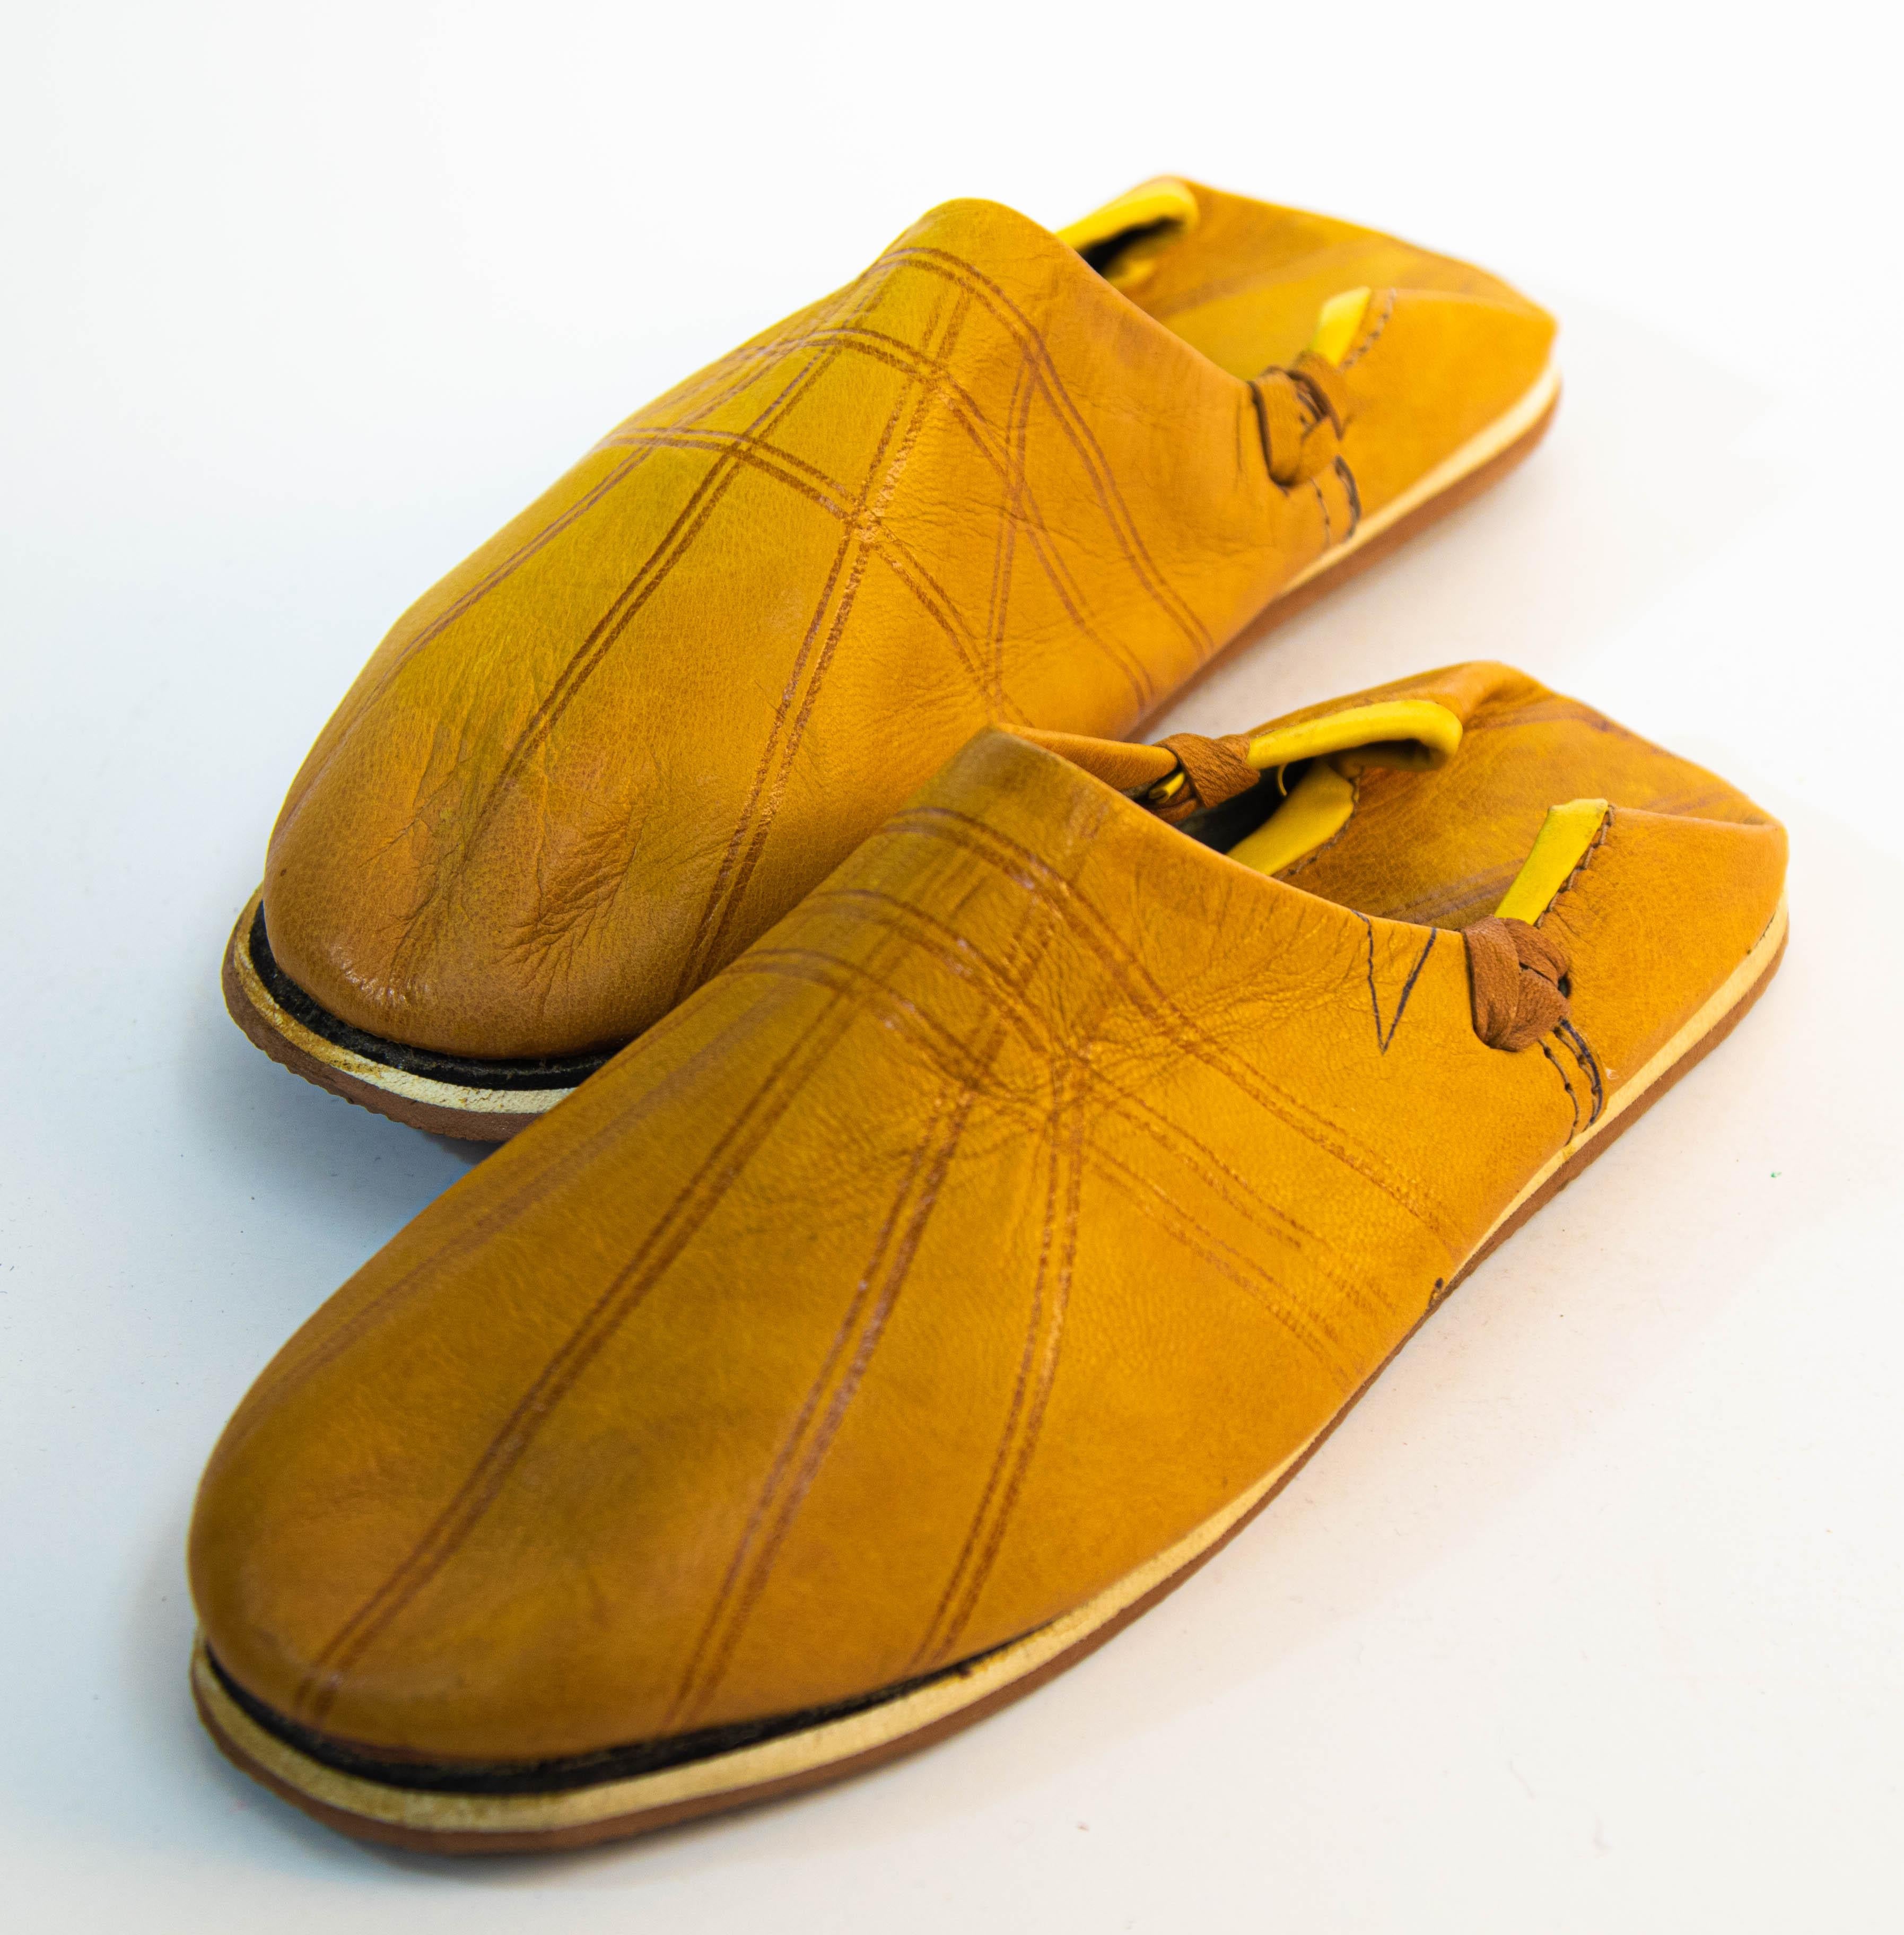 Marokkanische ethnische gelbe Lederpantoffeln sind handgefertigt.
Handgefertigt in Fez, Marokko.
Marokkanische Schuhe für das Schwimmbad oder den Strand, gerade rechtzeitig für den Sommer.
Abmessungen.
Die Sohle ist 9,5 in. x 3,5 in